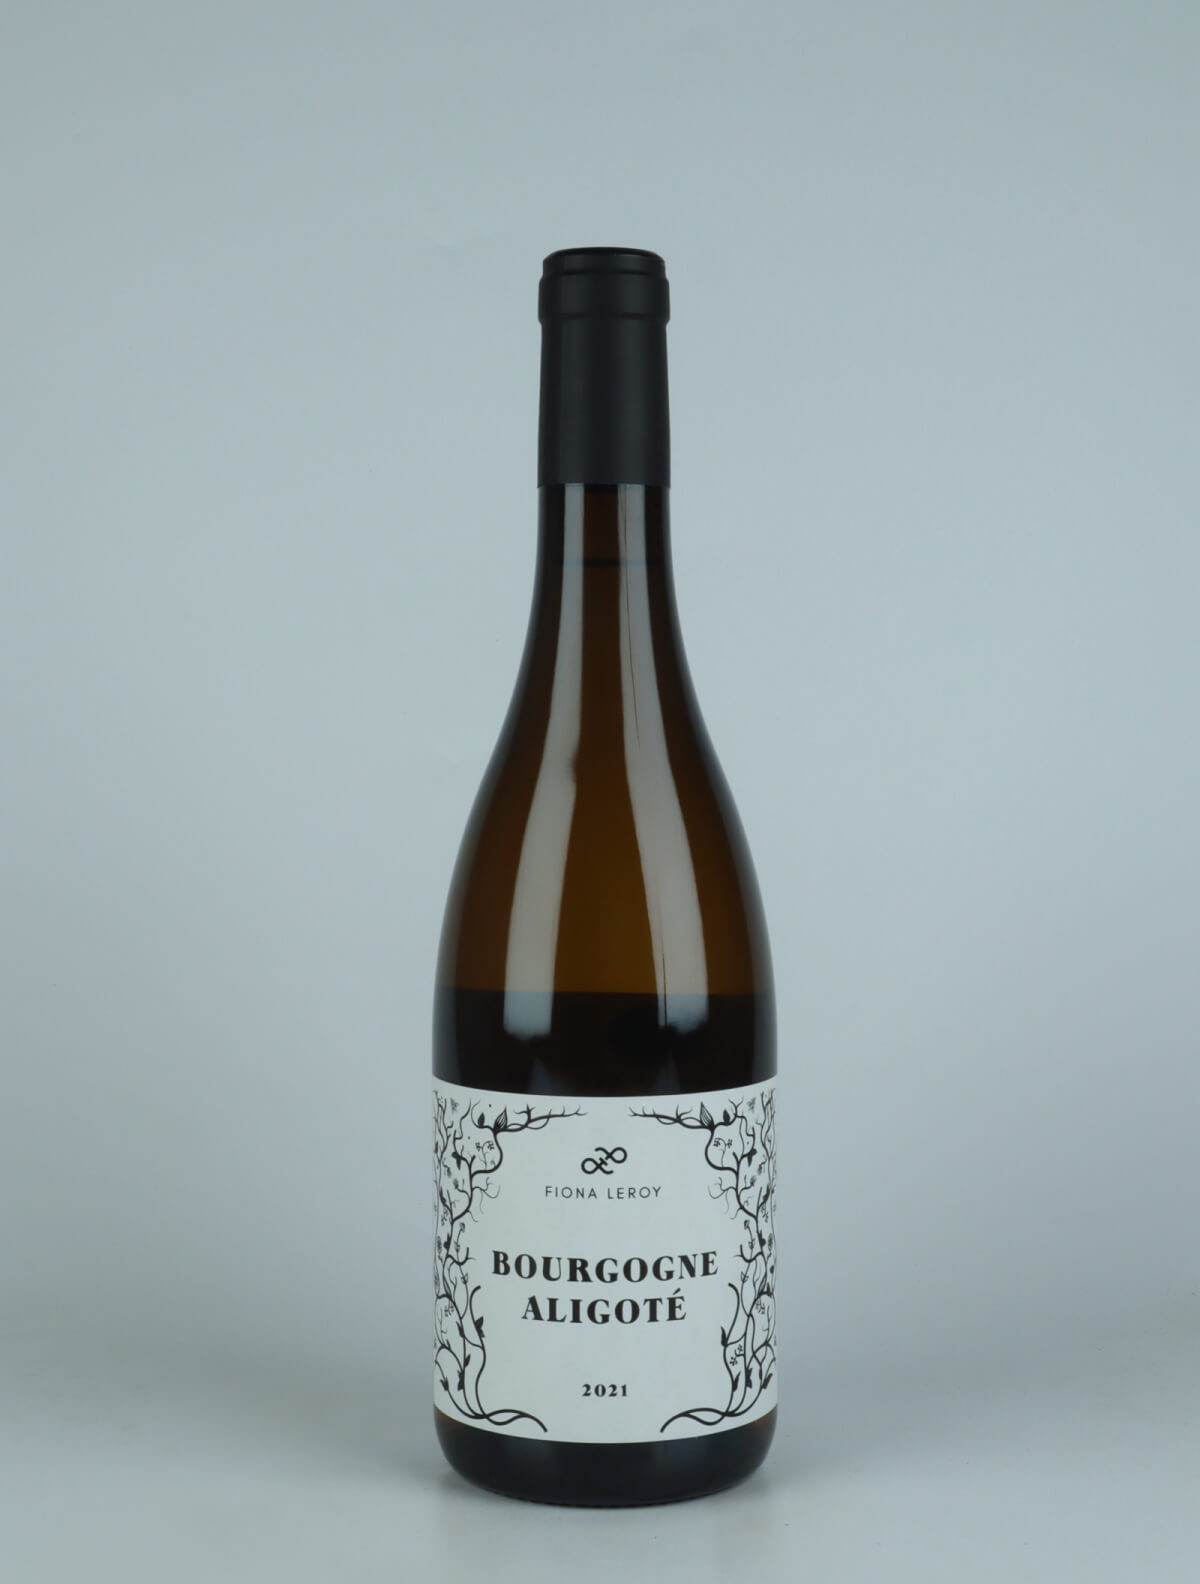 A bottle 2021 Bourgogne Aligoté White wine from Fiona Leroy, Burgundy in France